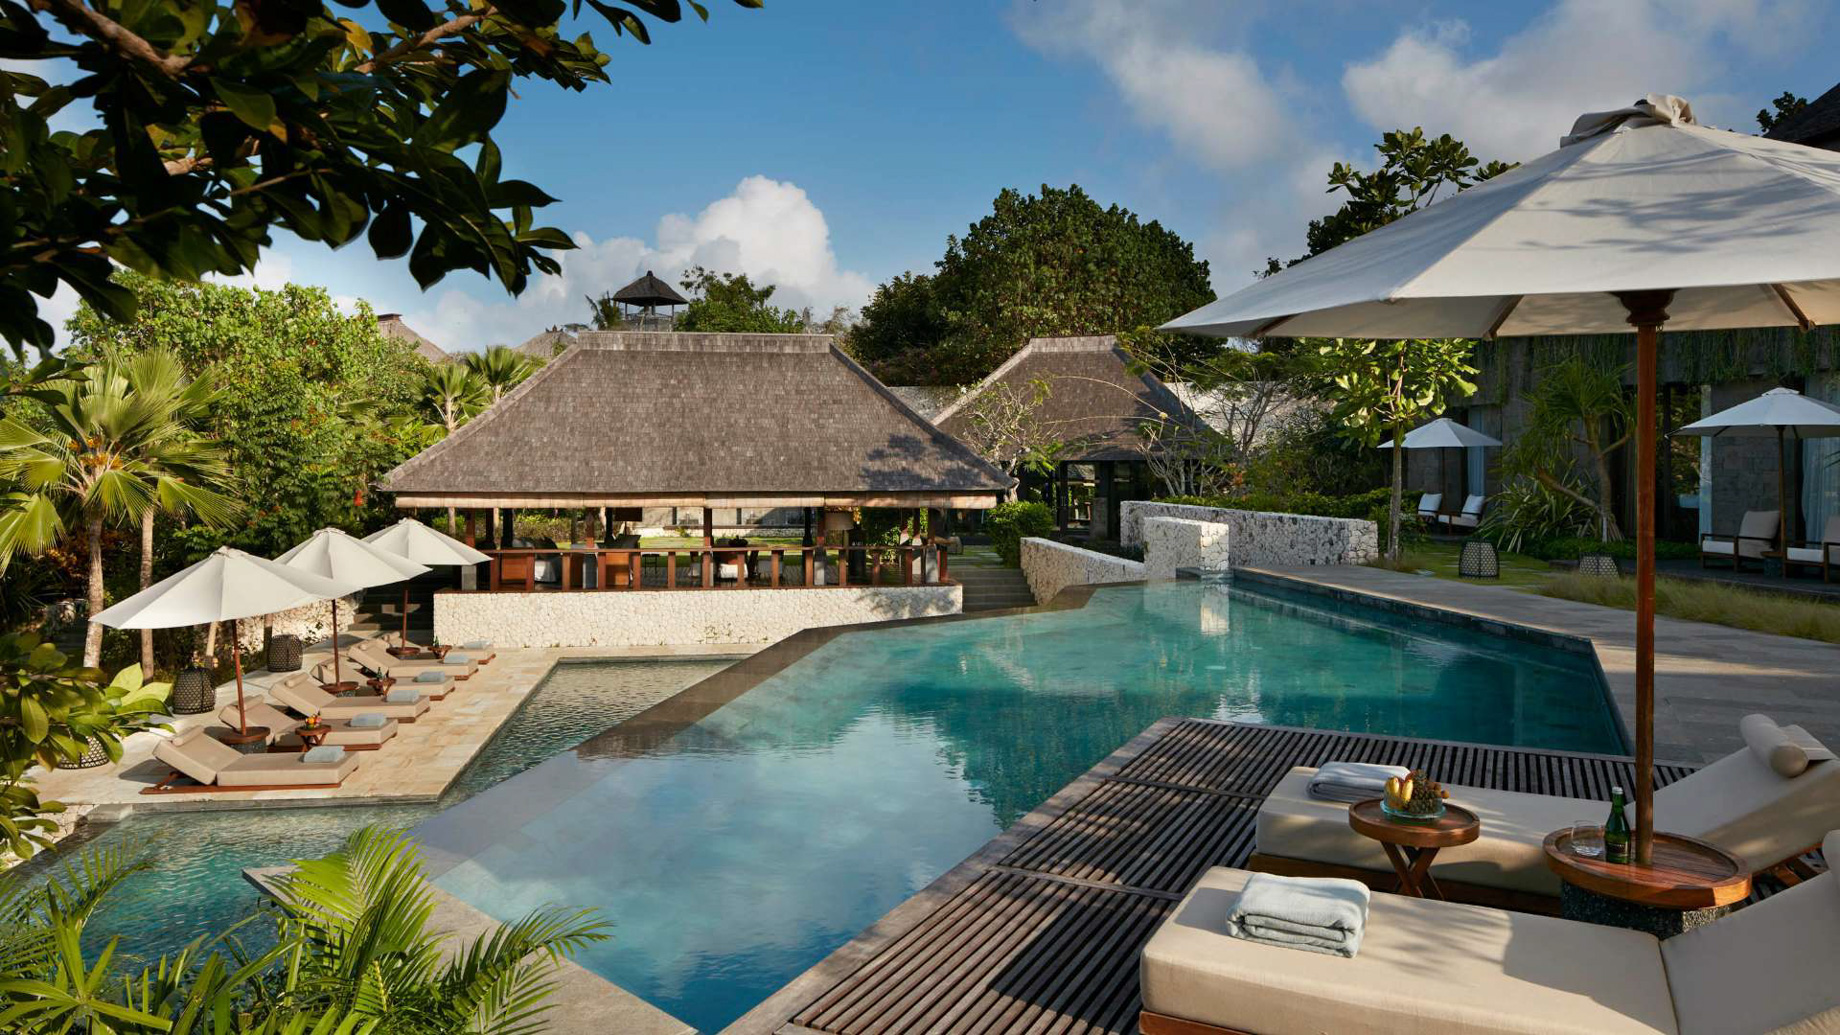 Bvlgari Resort Bali – Uluwatu, Bali, Indonesia – Pool Courtyard Area